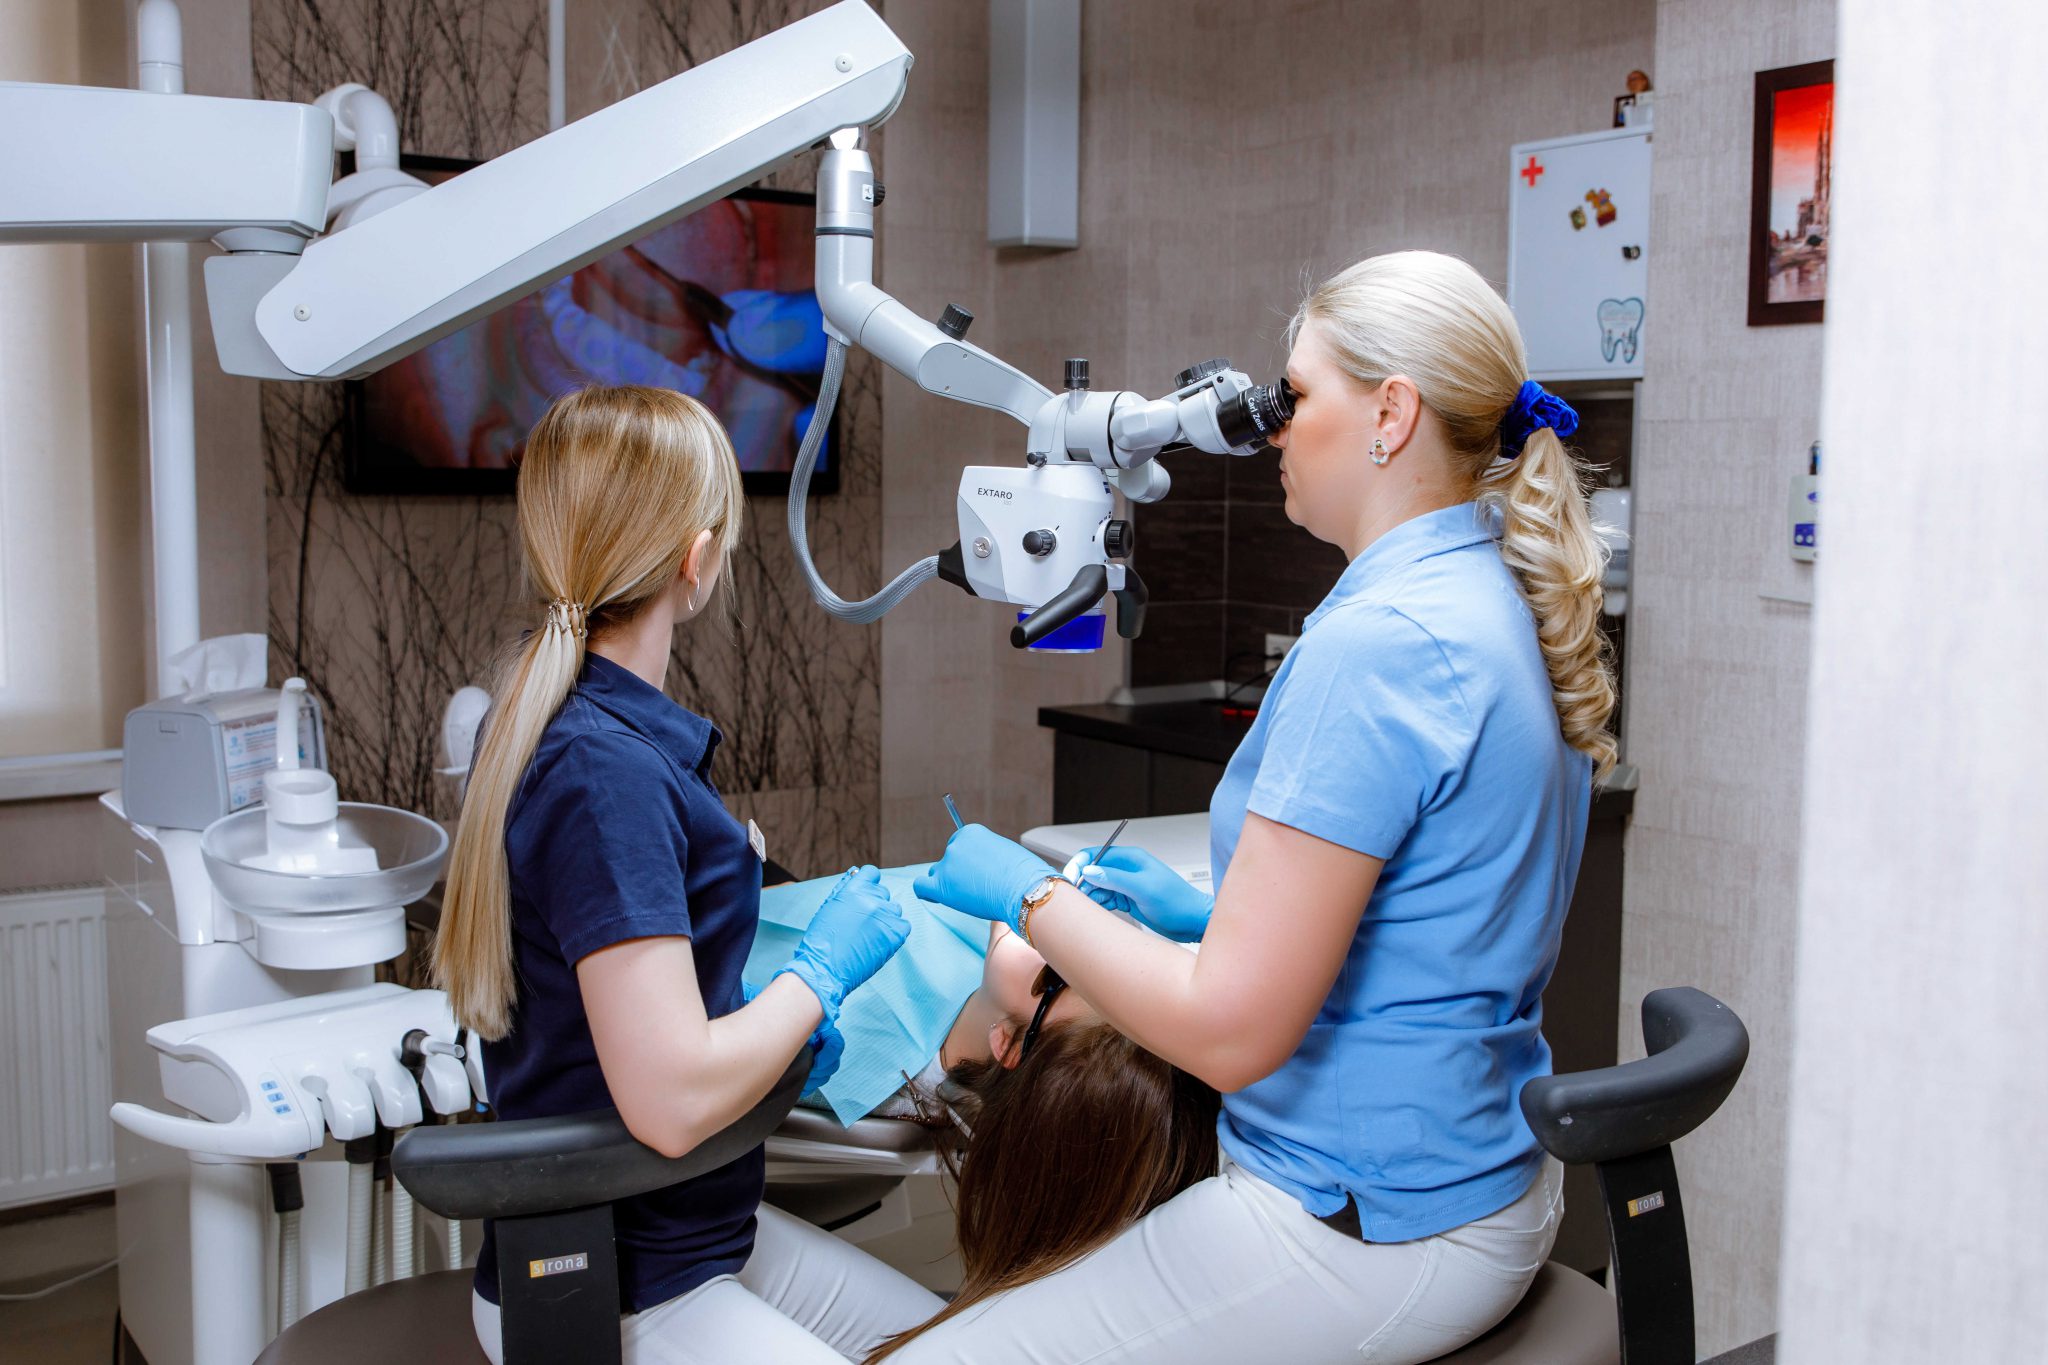 Услуги стоматолога в германии для иностранцев-экспатов. какая страховка покрывает лечение зубов – государственная или частная? стоимость стоматологических услуг для иностранных граждан в германии.